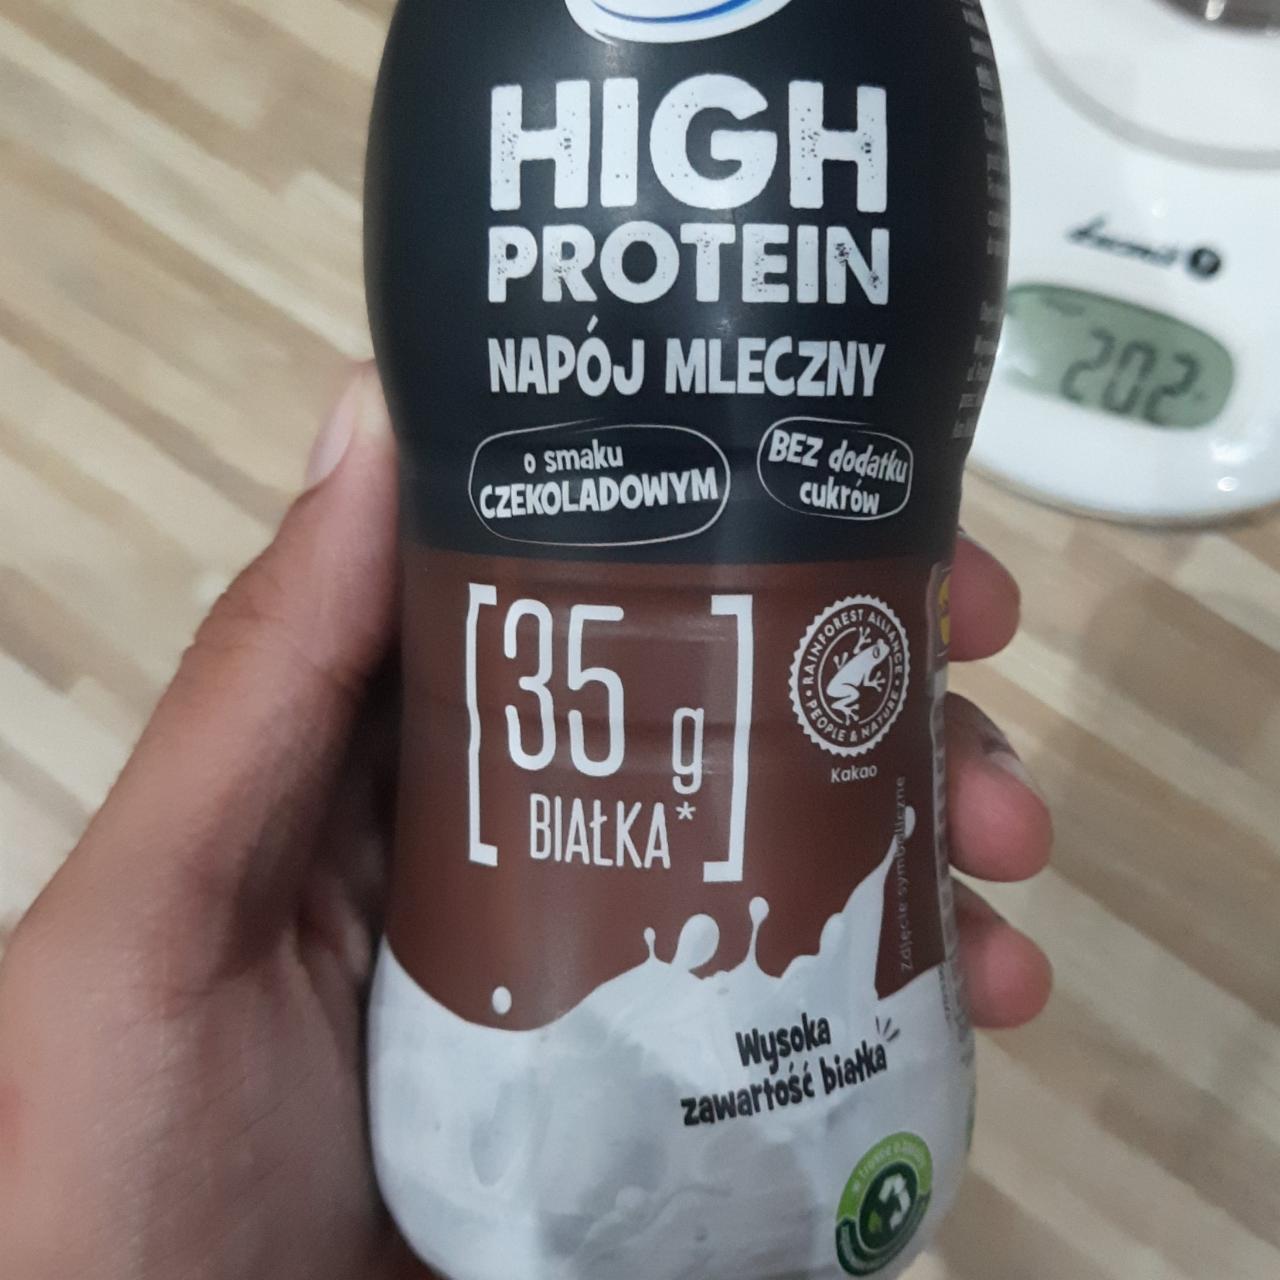 Zdjęcia - High Protein Napój Mleczny o smaku czekoladowym Pilos